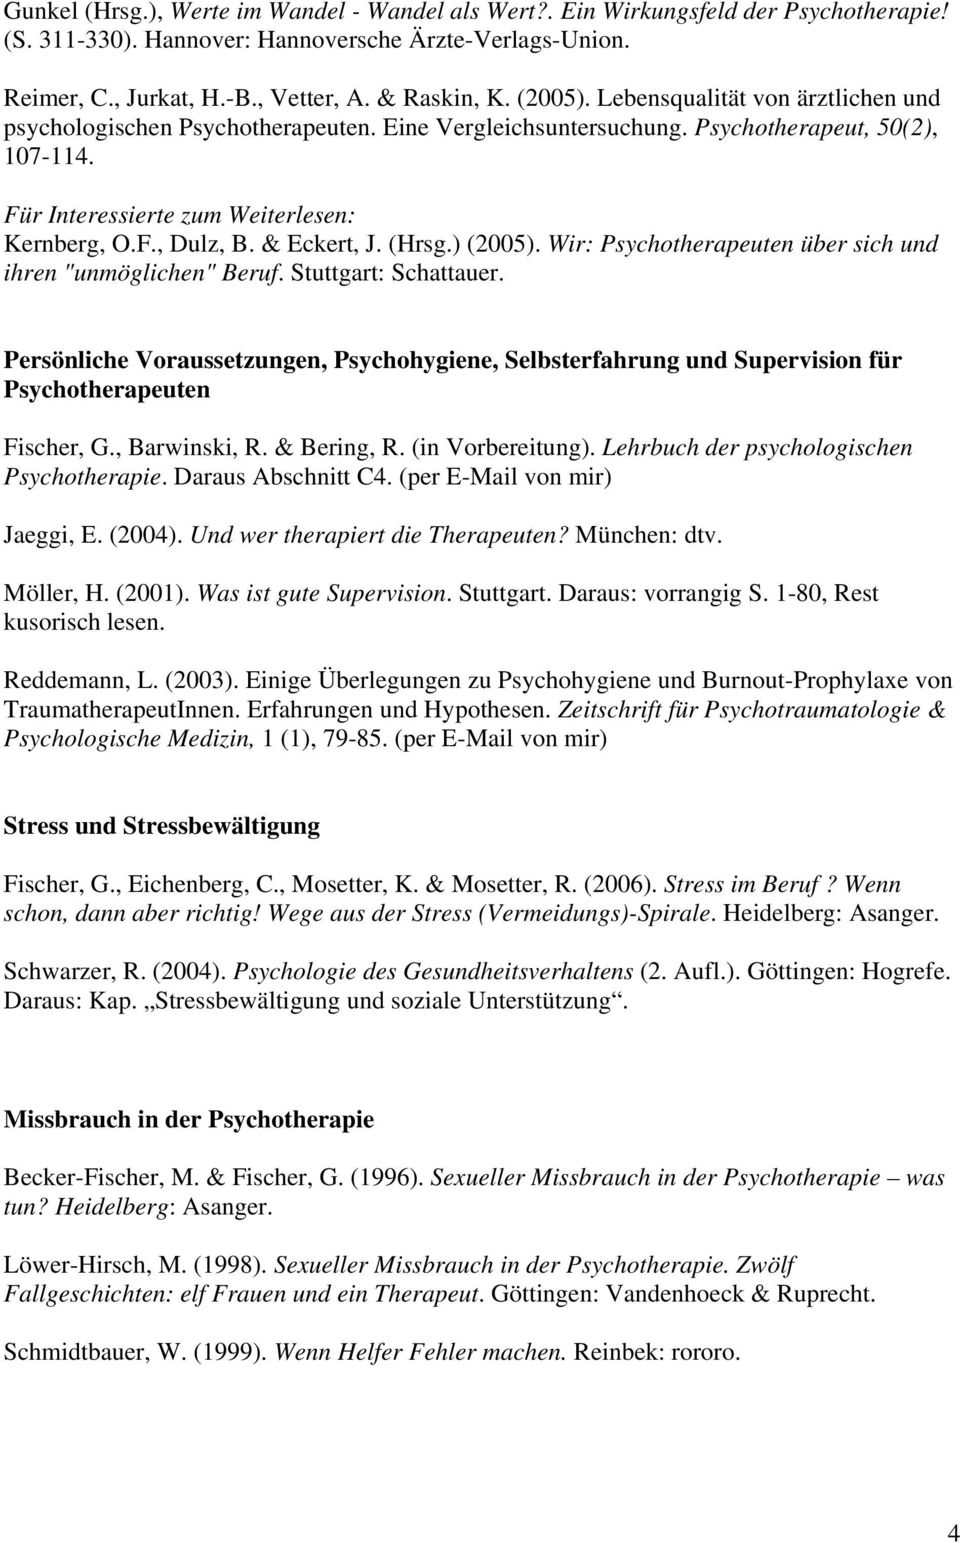 & Eckert, J. (Hrsg.) (2005). Wir: Psychotherapeuten über sich und ihren "unmöglichen" Beruf. Stuttgart: Schattauer.